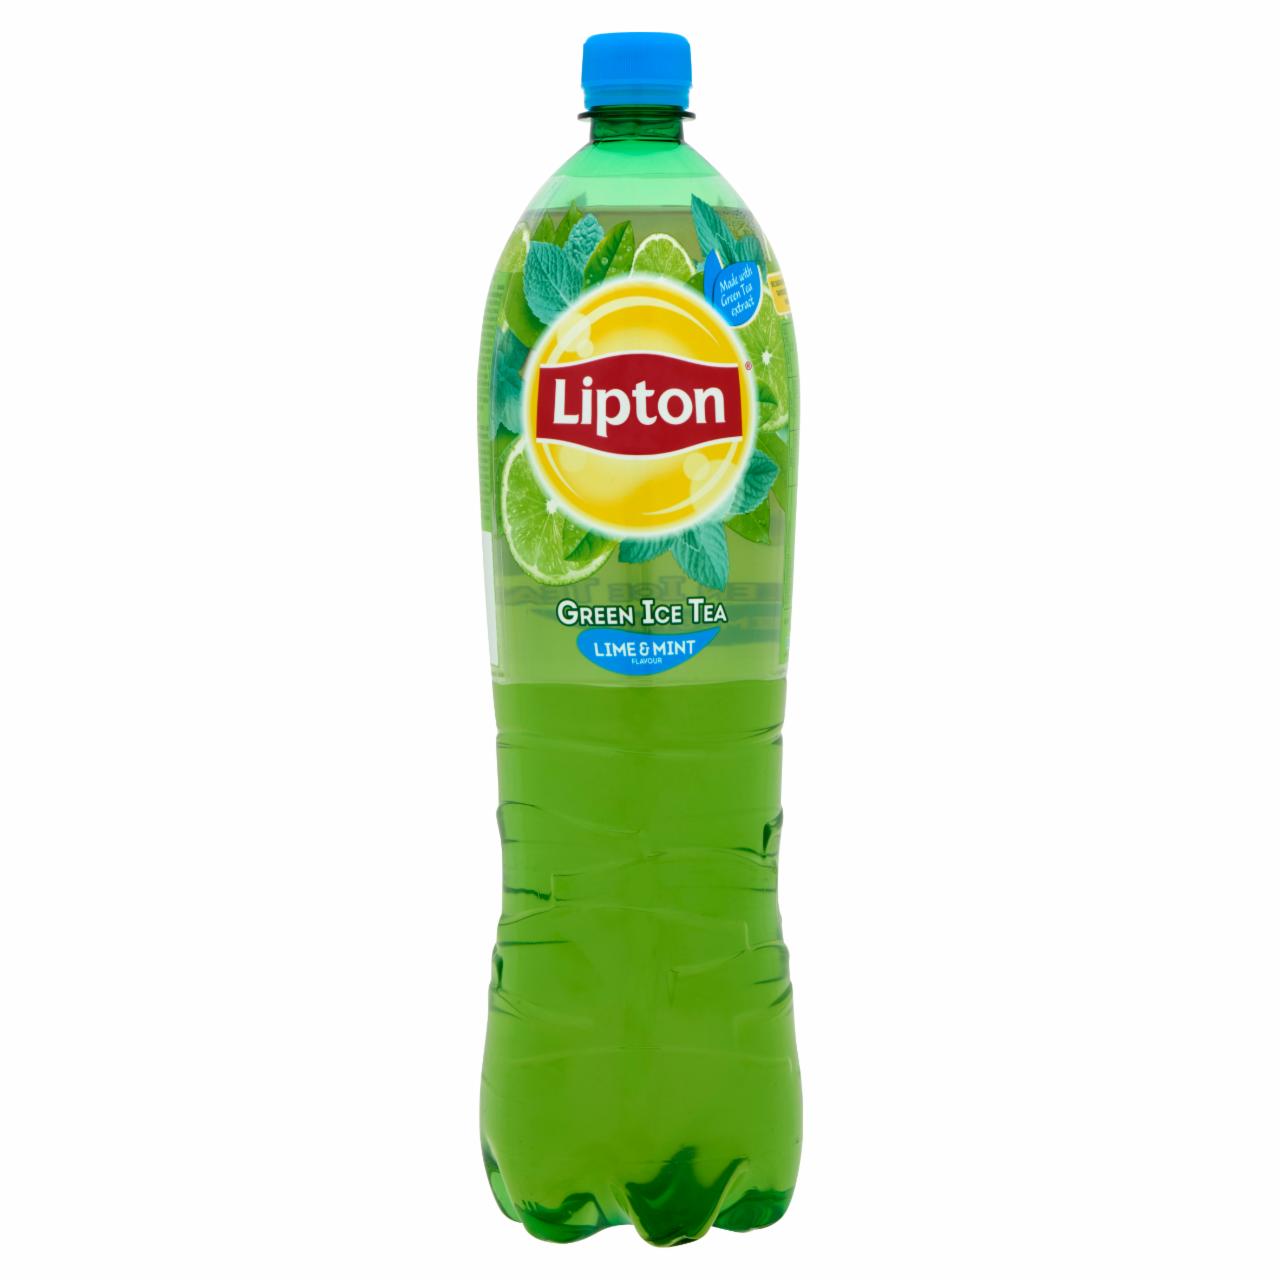 Képek - Lipton Green Ice Tea csökkentett energiatartalmú lime és menta ízű szénsavmentes üdítőital 1,5 l